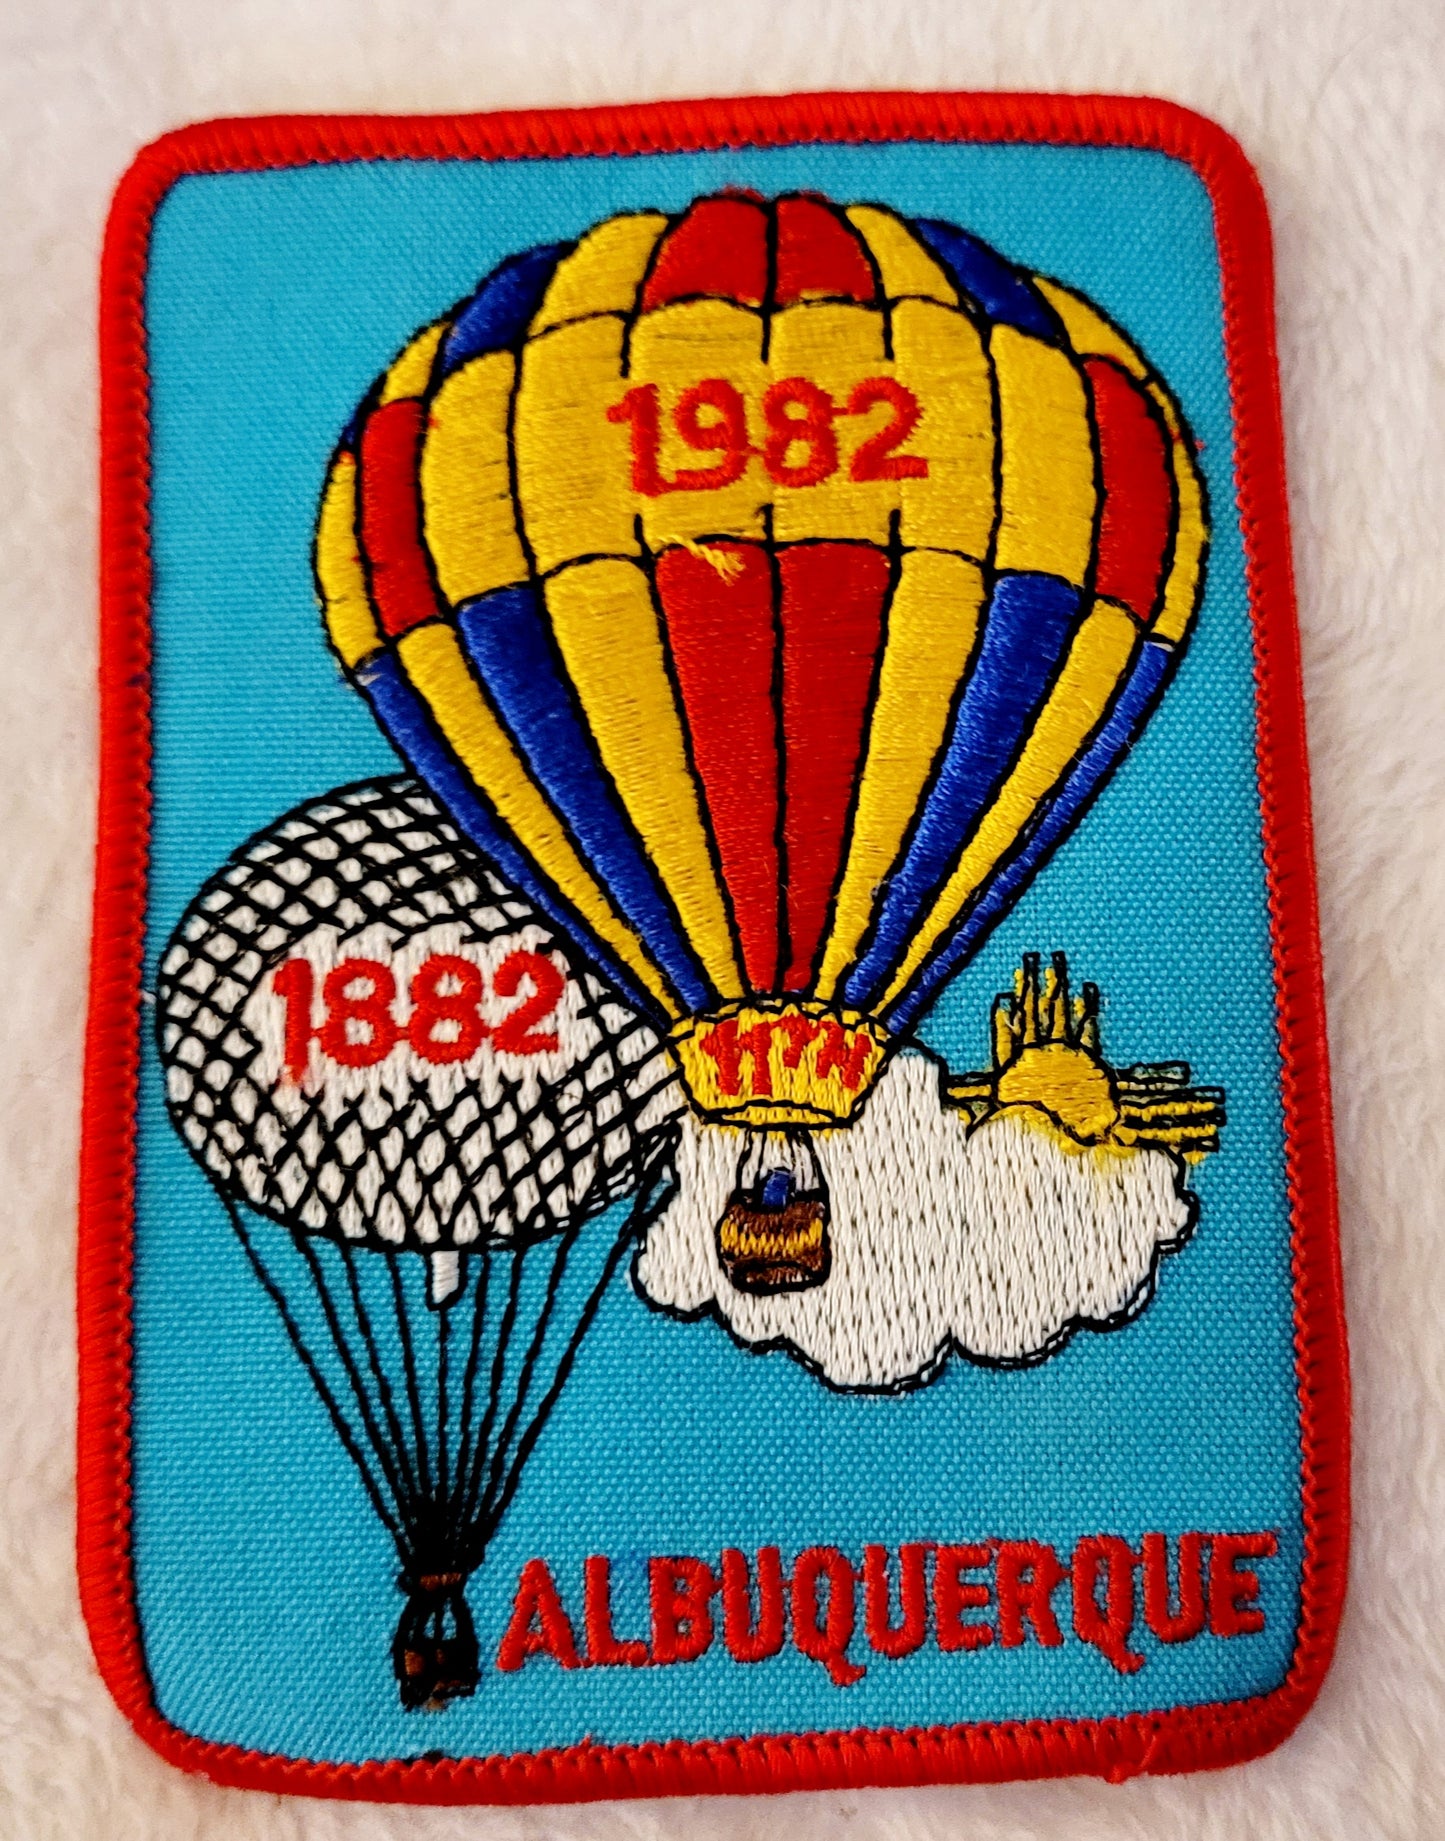 11th Annual ABQ Balloon Fiesta 1982 *Hot Air Balloon Patch